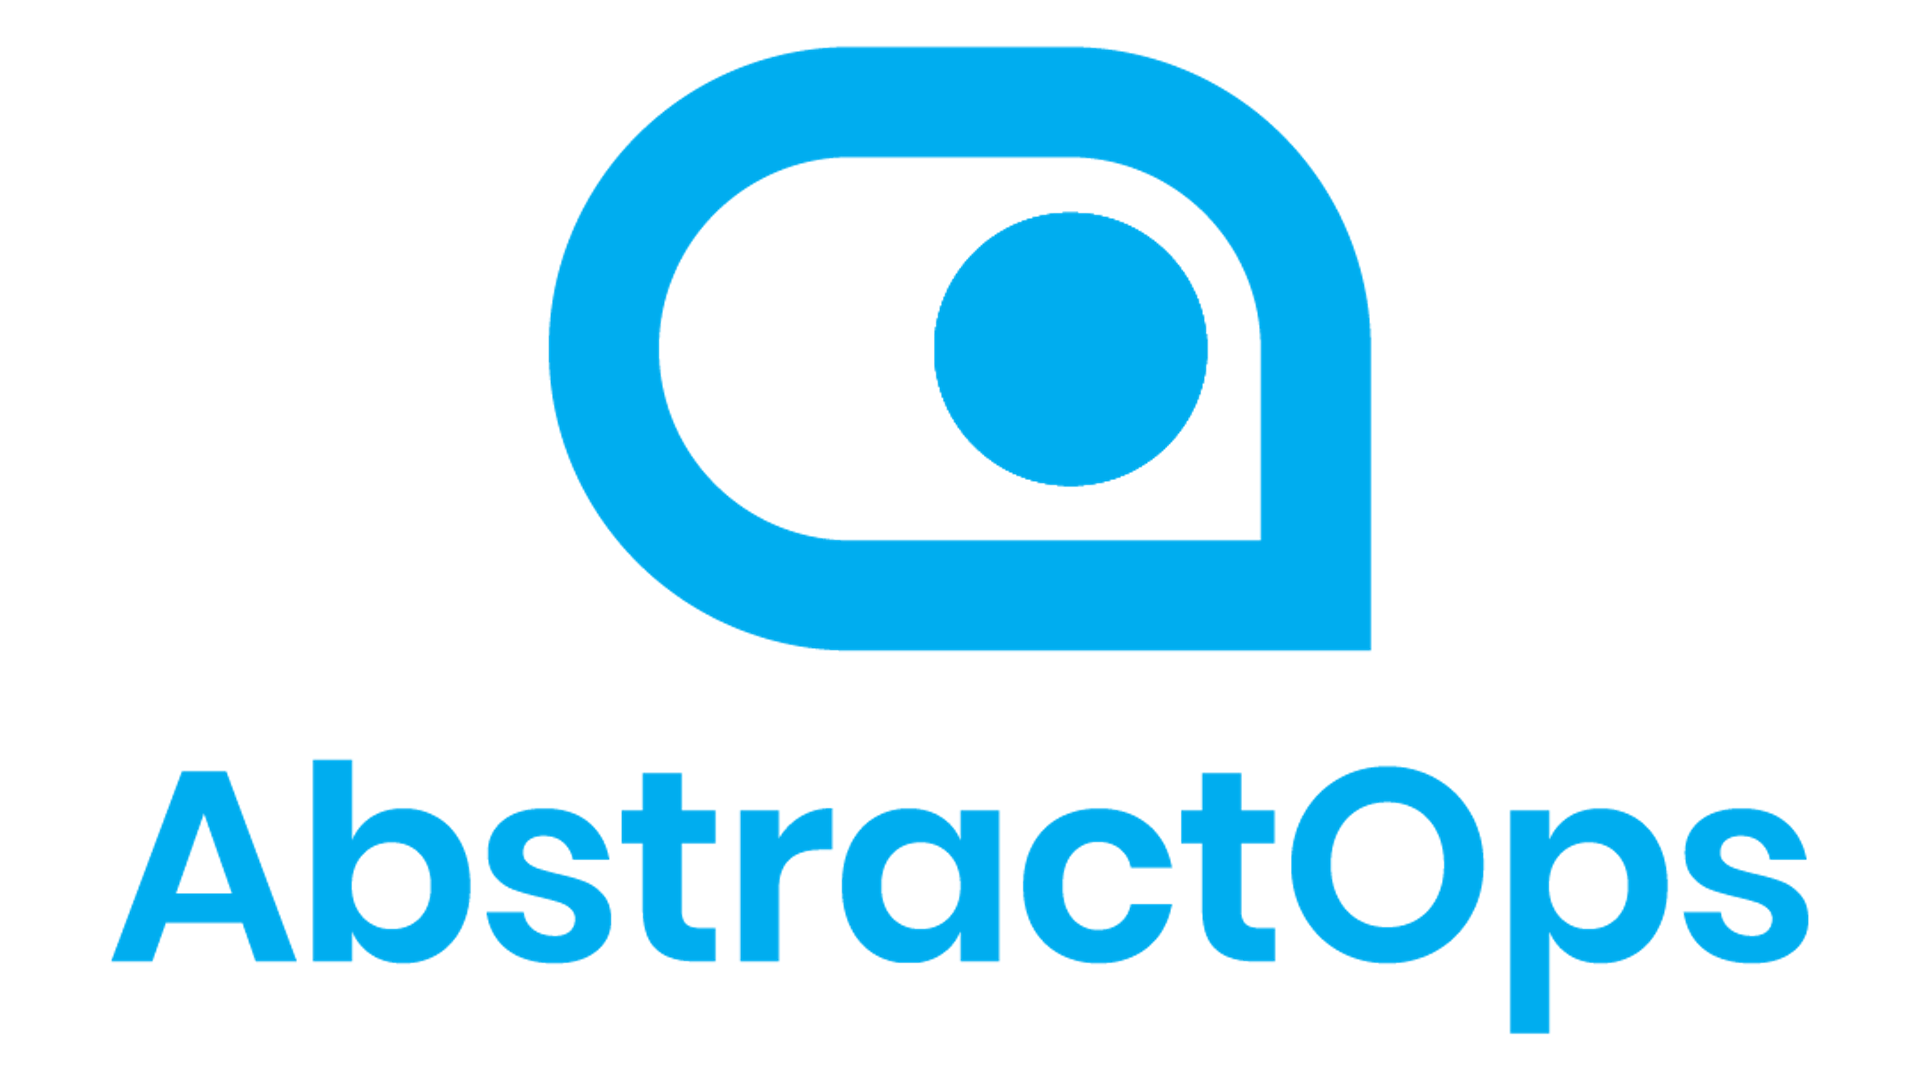 AbstractOps company logo.